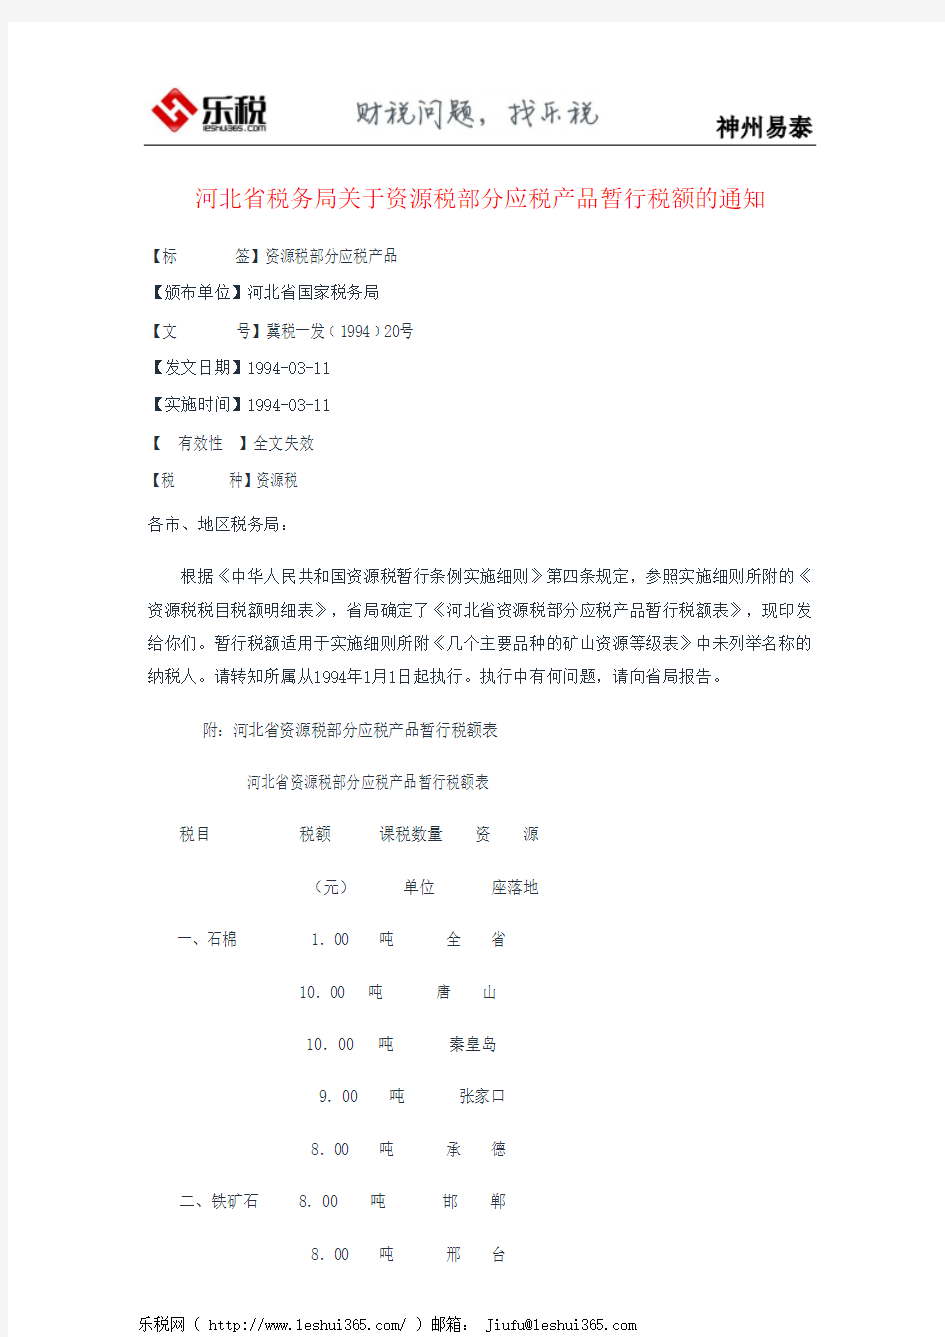 河北省税务局关于资源税部分应税产品暂行税额的通知